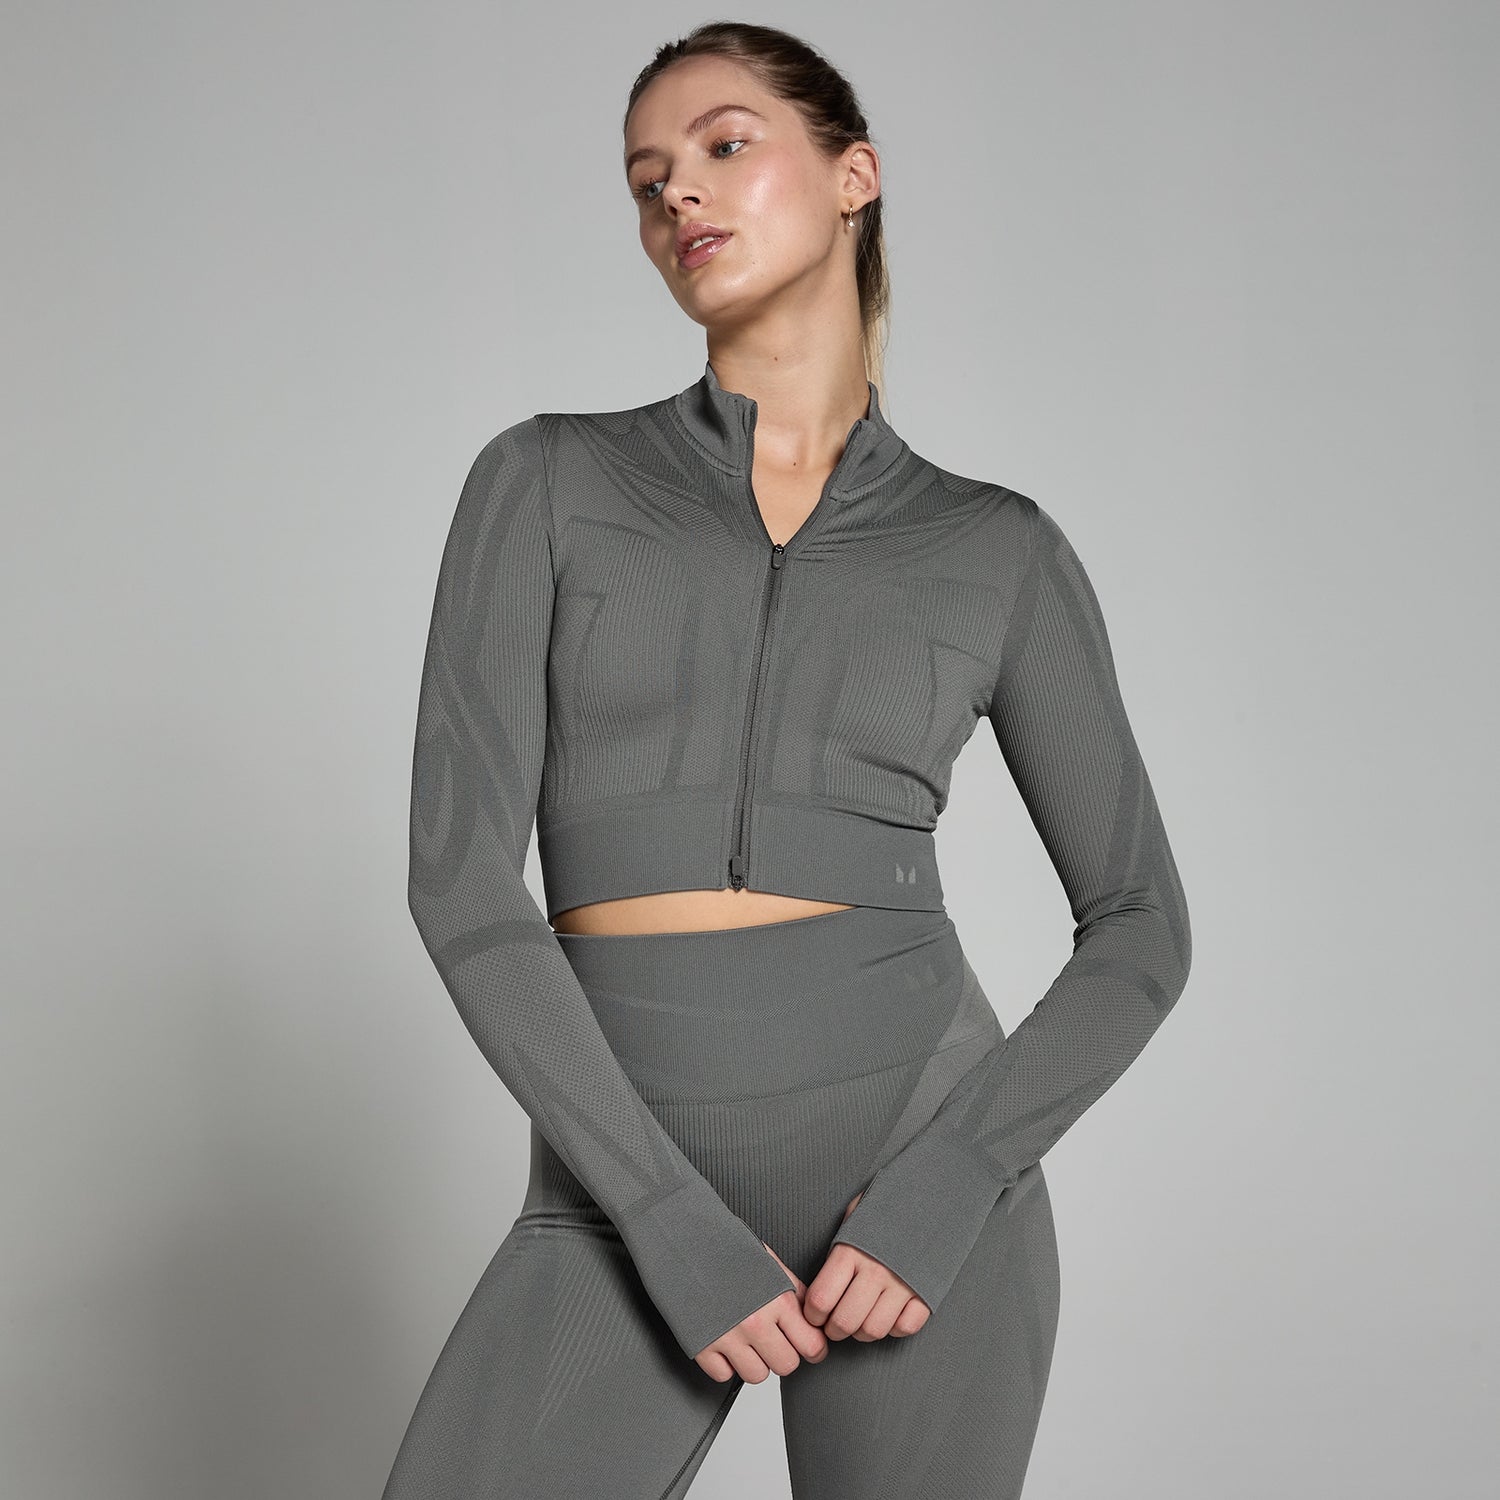 Jachetă decupată fără cusături MP Tempo Ultra Geometric pentru femei - Carbon - XS